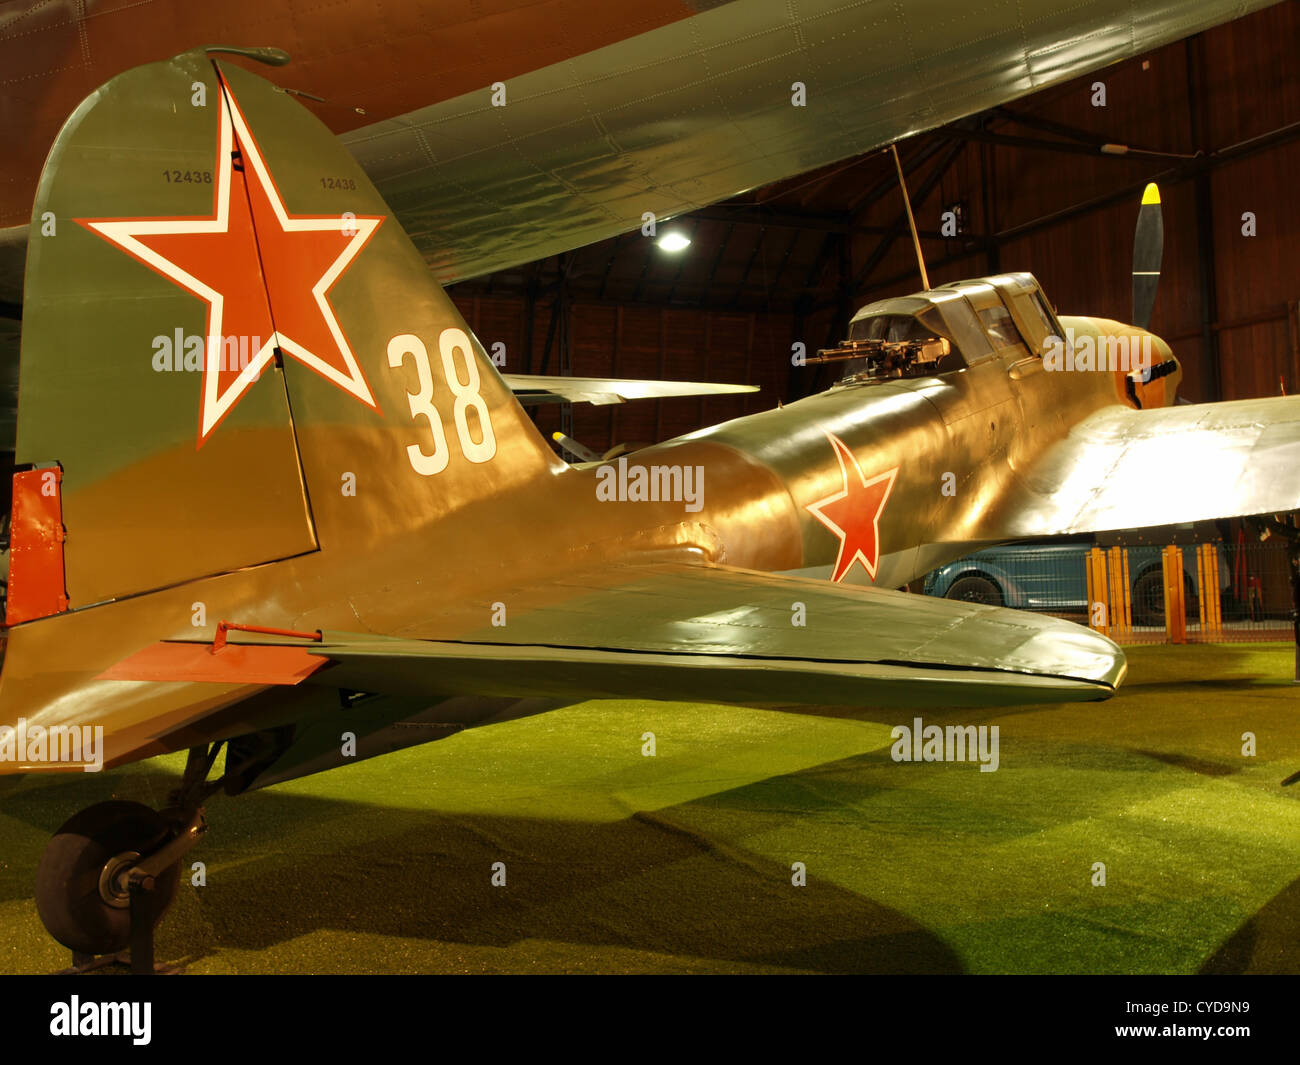 Ilyushin Il-2m3 Shturmovik (Nato name Bark) Stock Photo